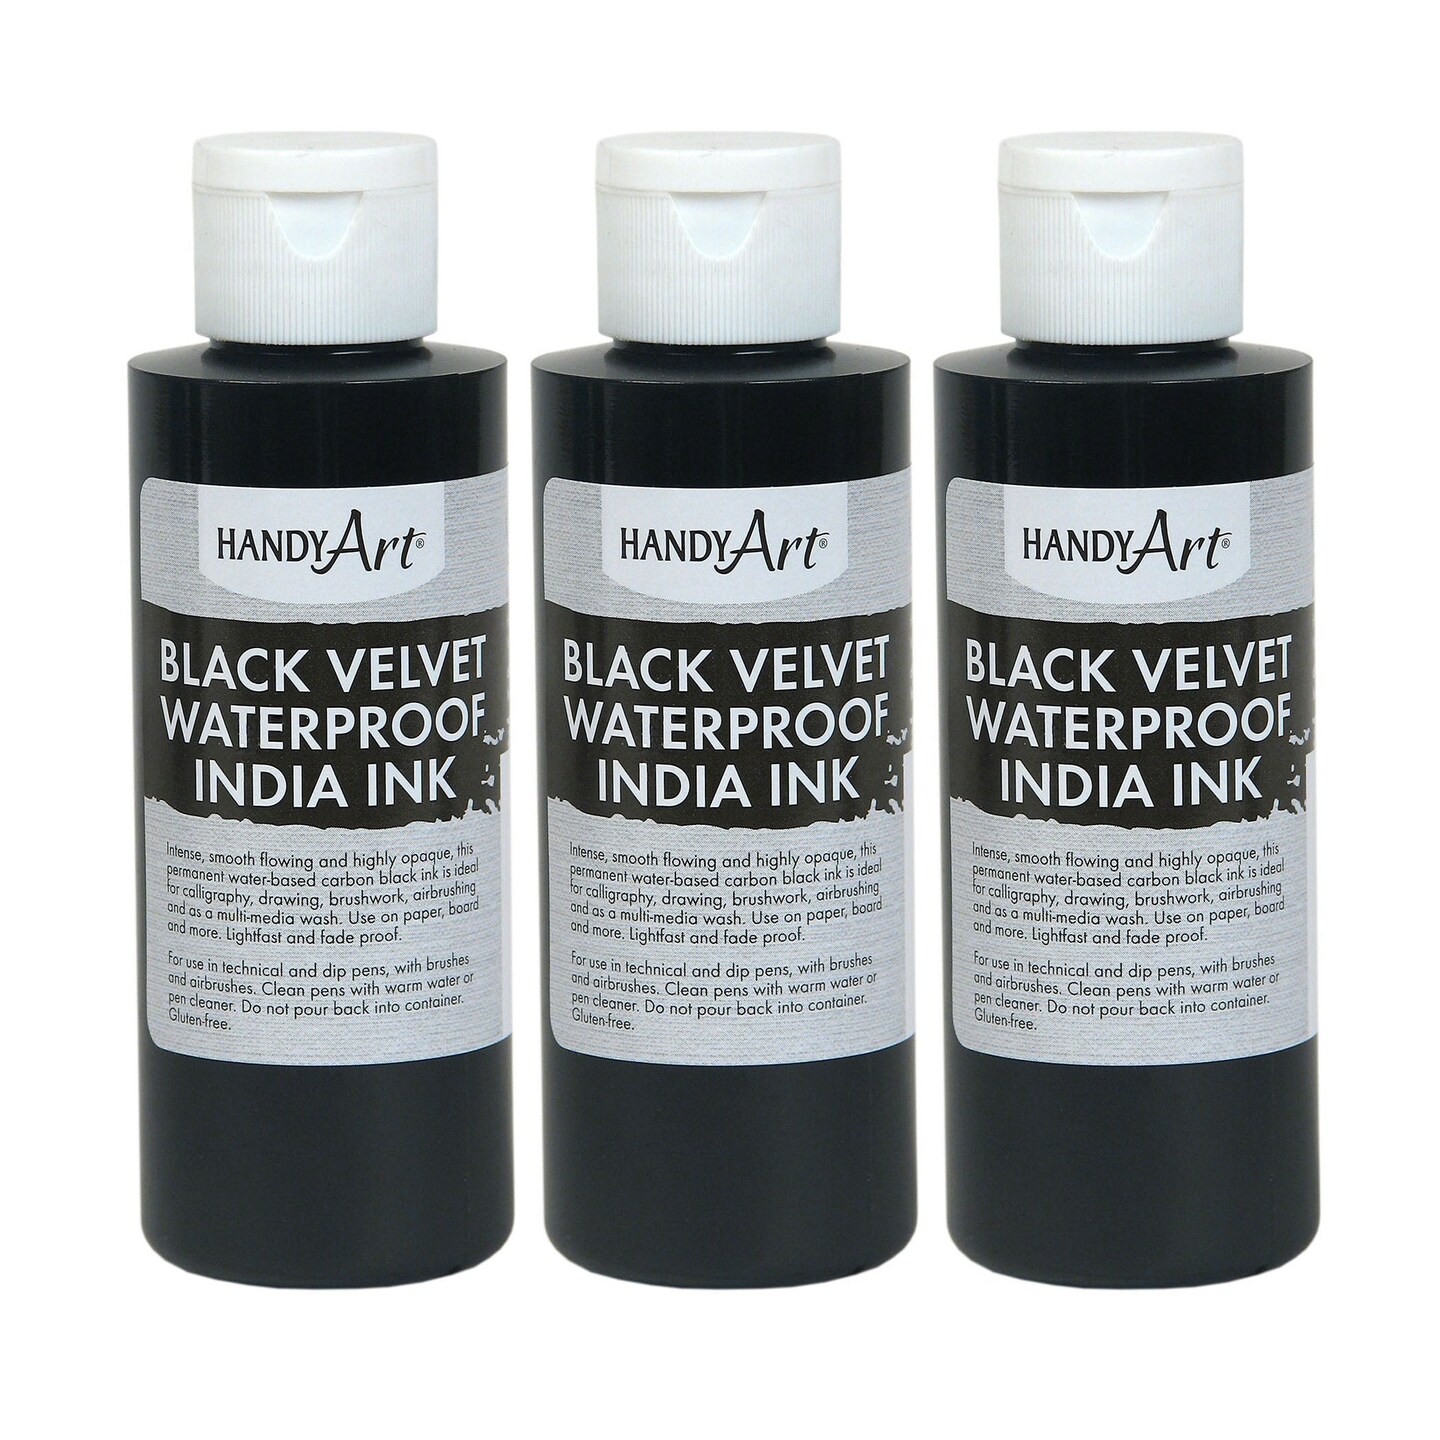 Black Velvet Waterproof India Ink, Hobby Lobby